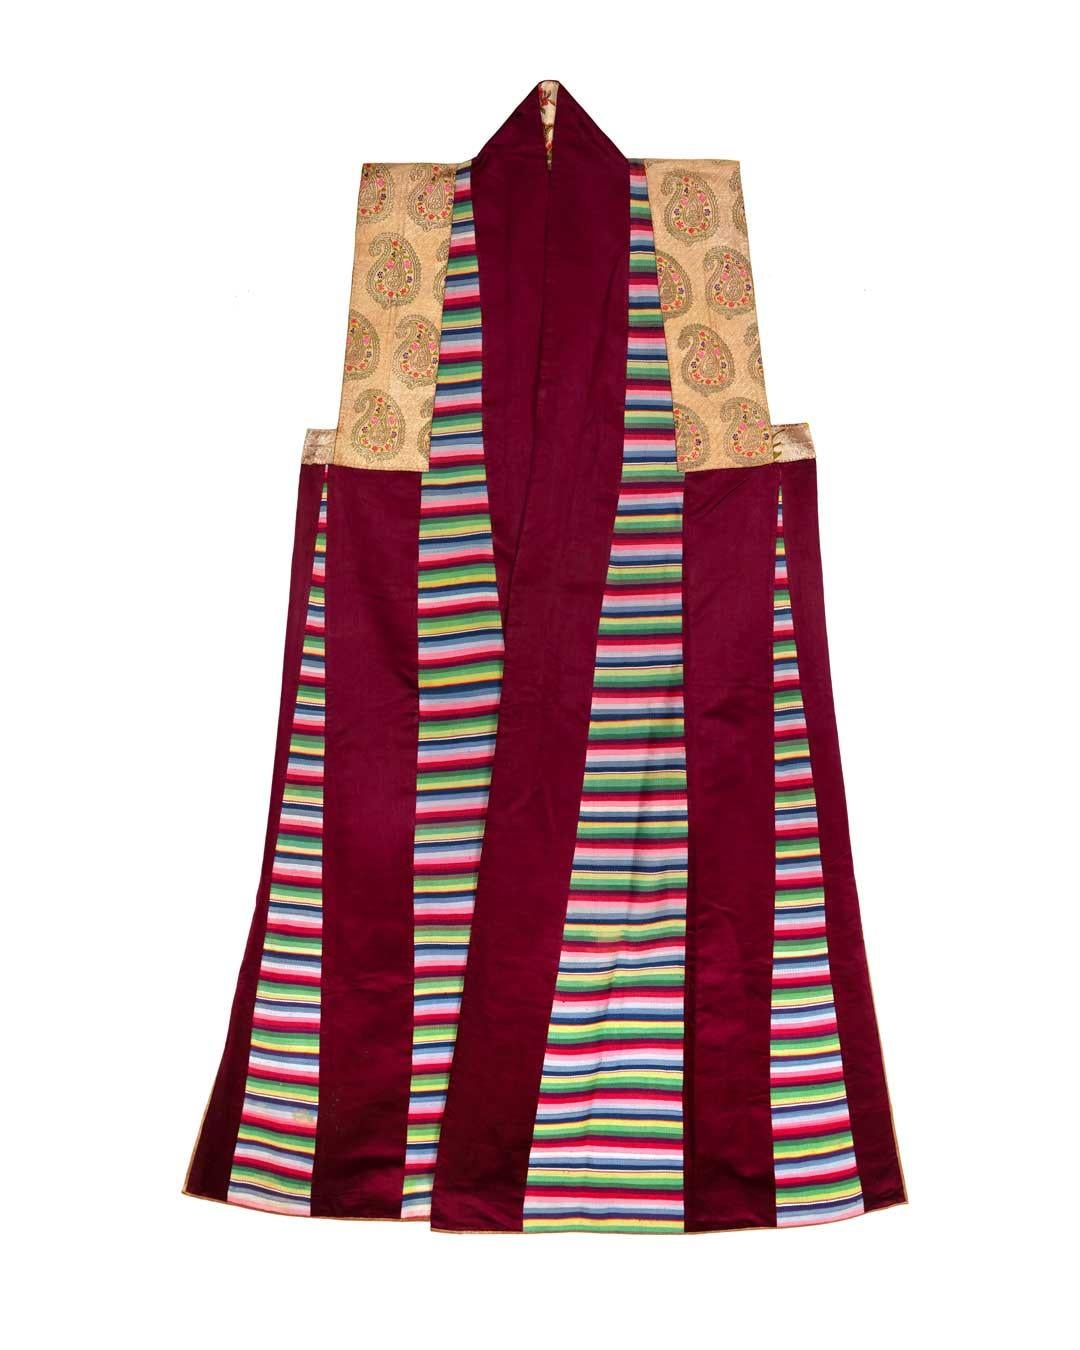 Diese auffällige lange Seidenweste wurde für eine Frau im Tibet des 19. Jahrhunderts angefertigt. Sie wurde zu besonderen Anlässen und Zeremonien wie Hochzeiten und religiösen Feiern getragen, mit vielen Schichten von Kleidung und Schmuck. Hier